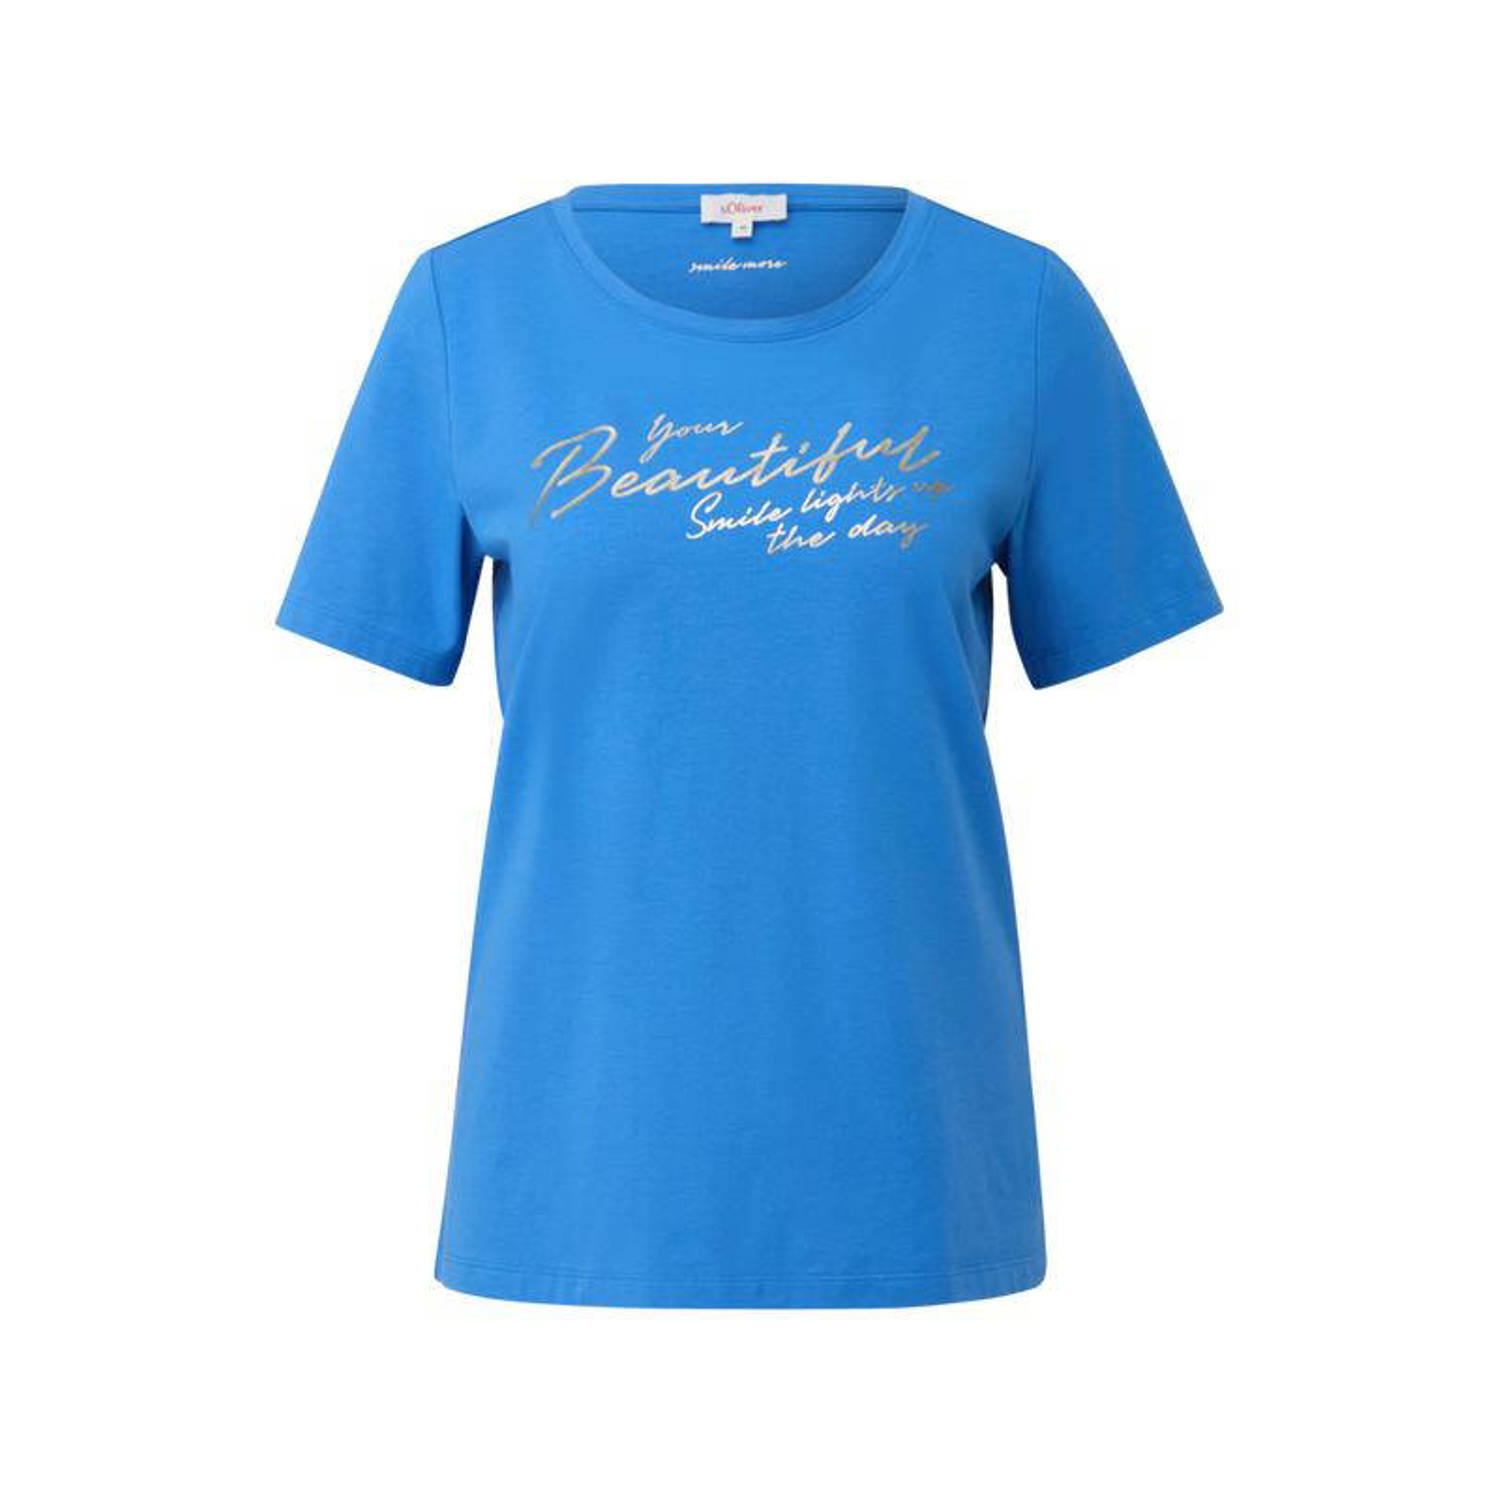 S.Oliver T-shirt met tekst blauw